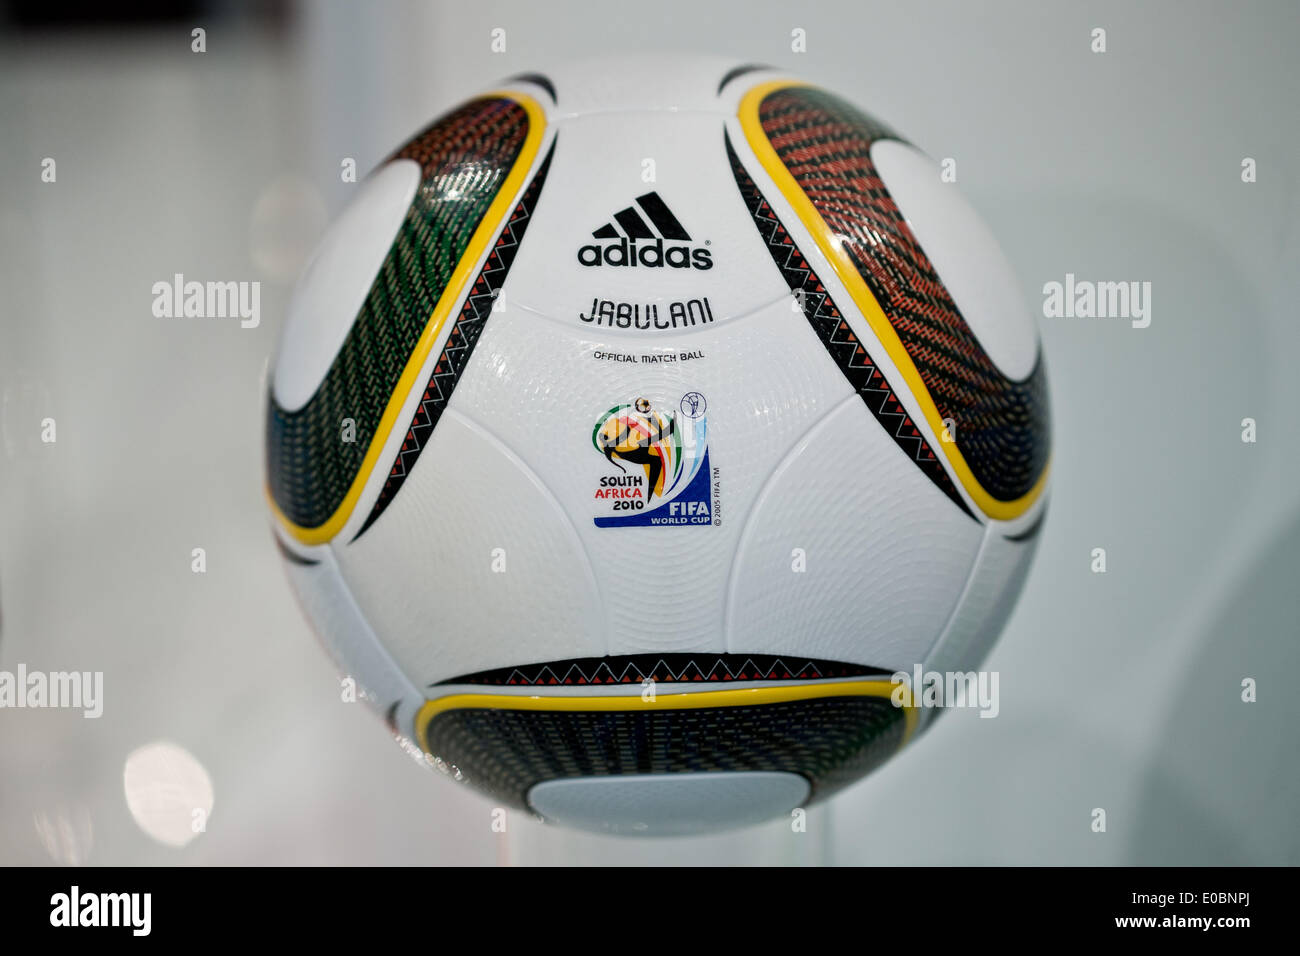 El 'Jabulani' balón de fútbol que fue el balón oficial de copa mundial de fútbol 2010 en Sudáfrica es retratada durante la reunión general fabricante de artículos deportivos Adidas